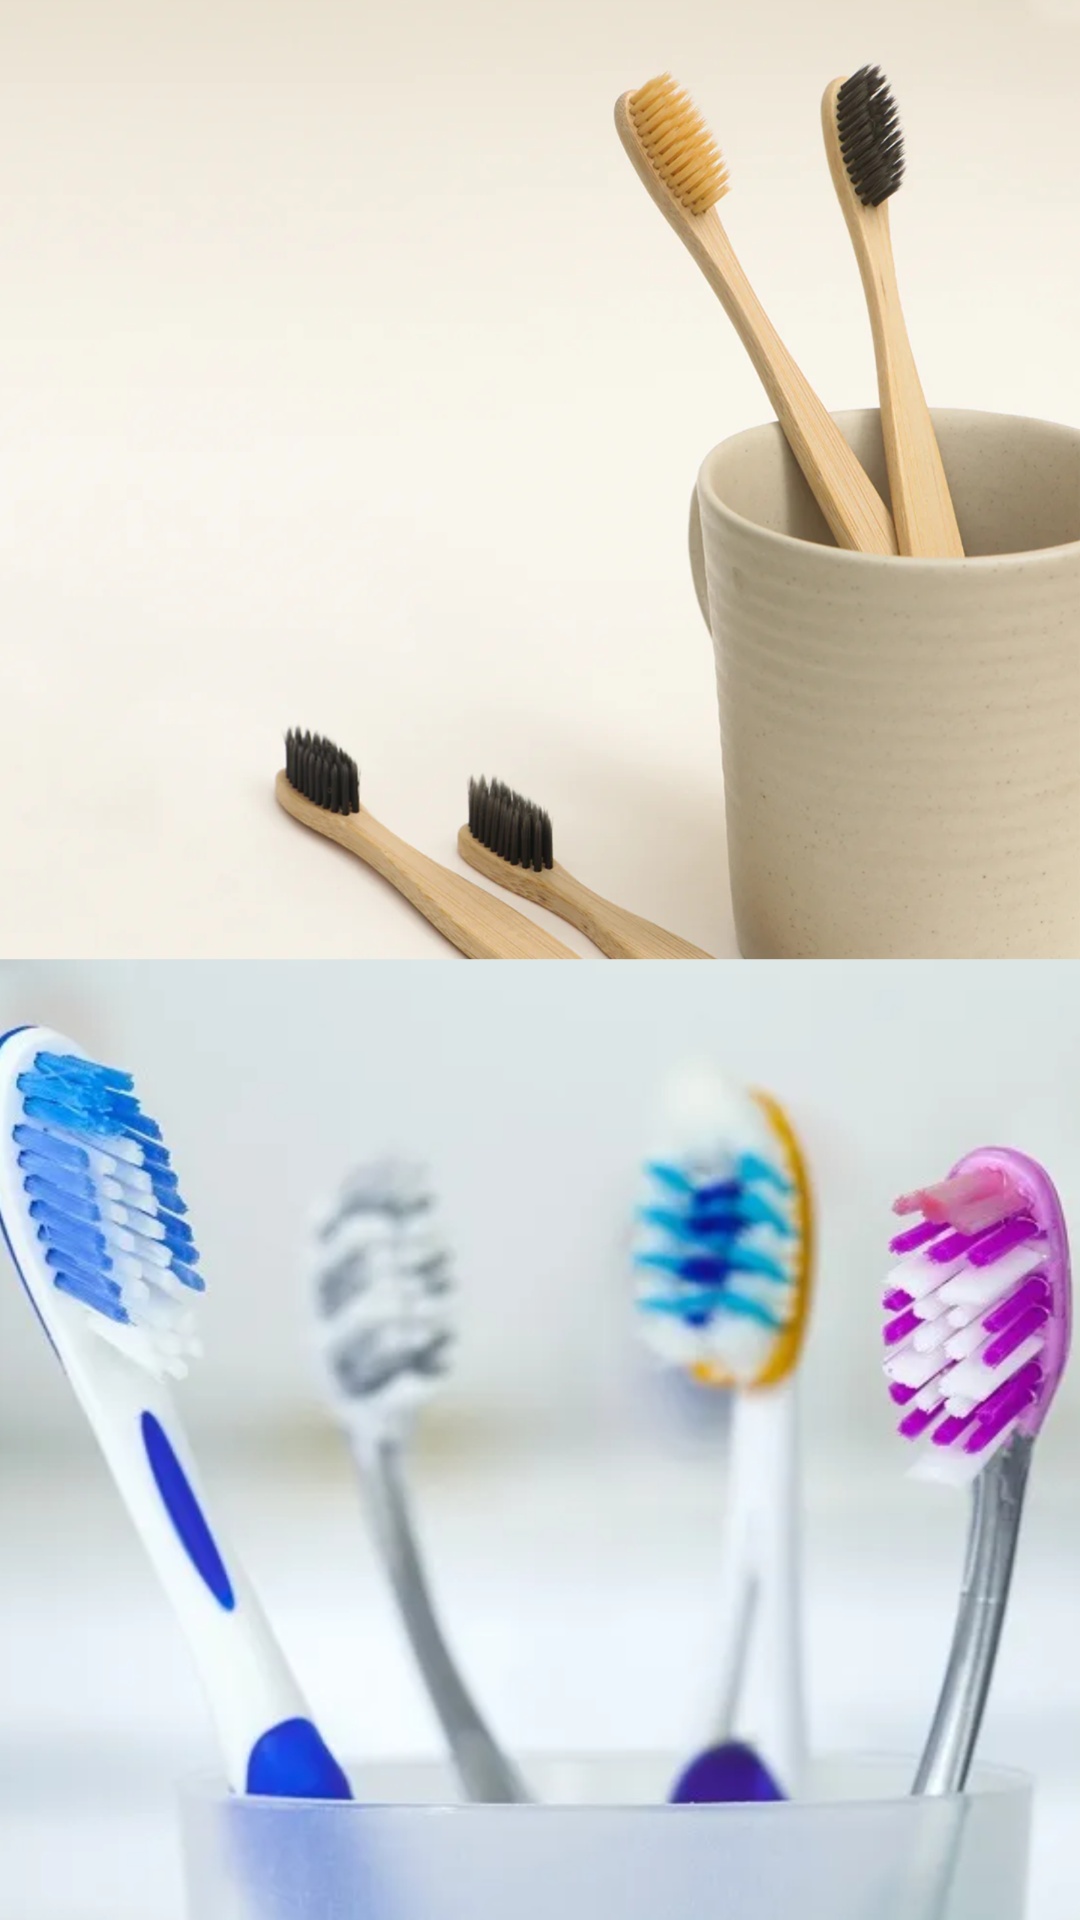 पुराना टूथब्रश है बड़े काम का, फेंकने से पहले जान लें उसके ज़बरदस्त फायदे